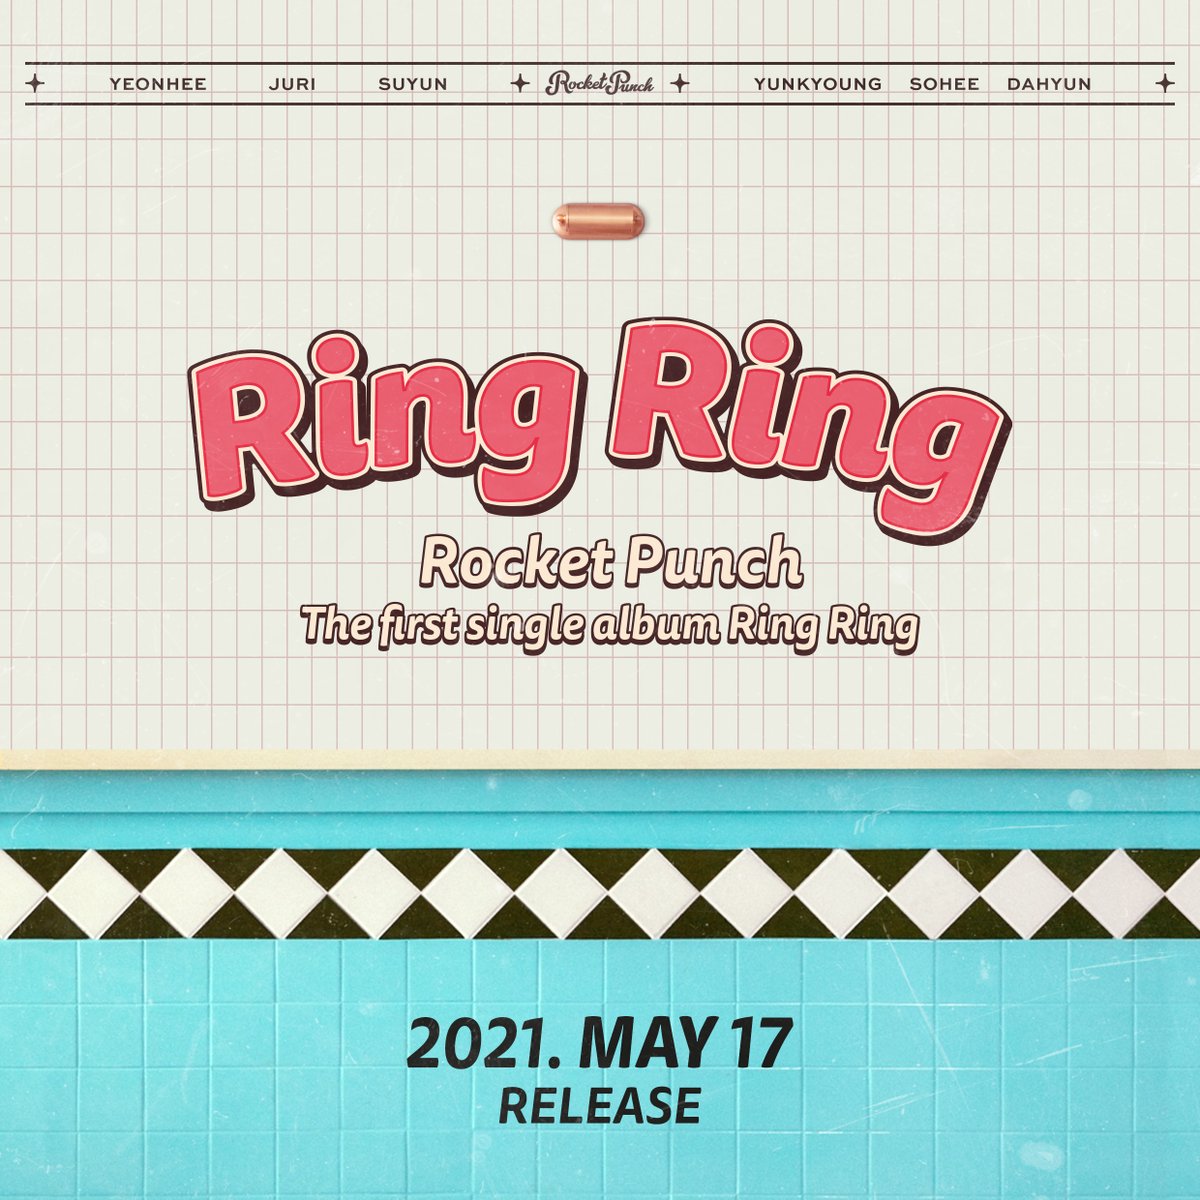 로켓펀치(Rocket Punch)
1st Single Album 'Ring Ring'

2021.05.17 MON 6PM(KST)
Coming soon

#로켓펀치 #RocketPunch 
#RingRing #20210517_6PM